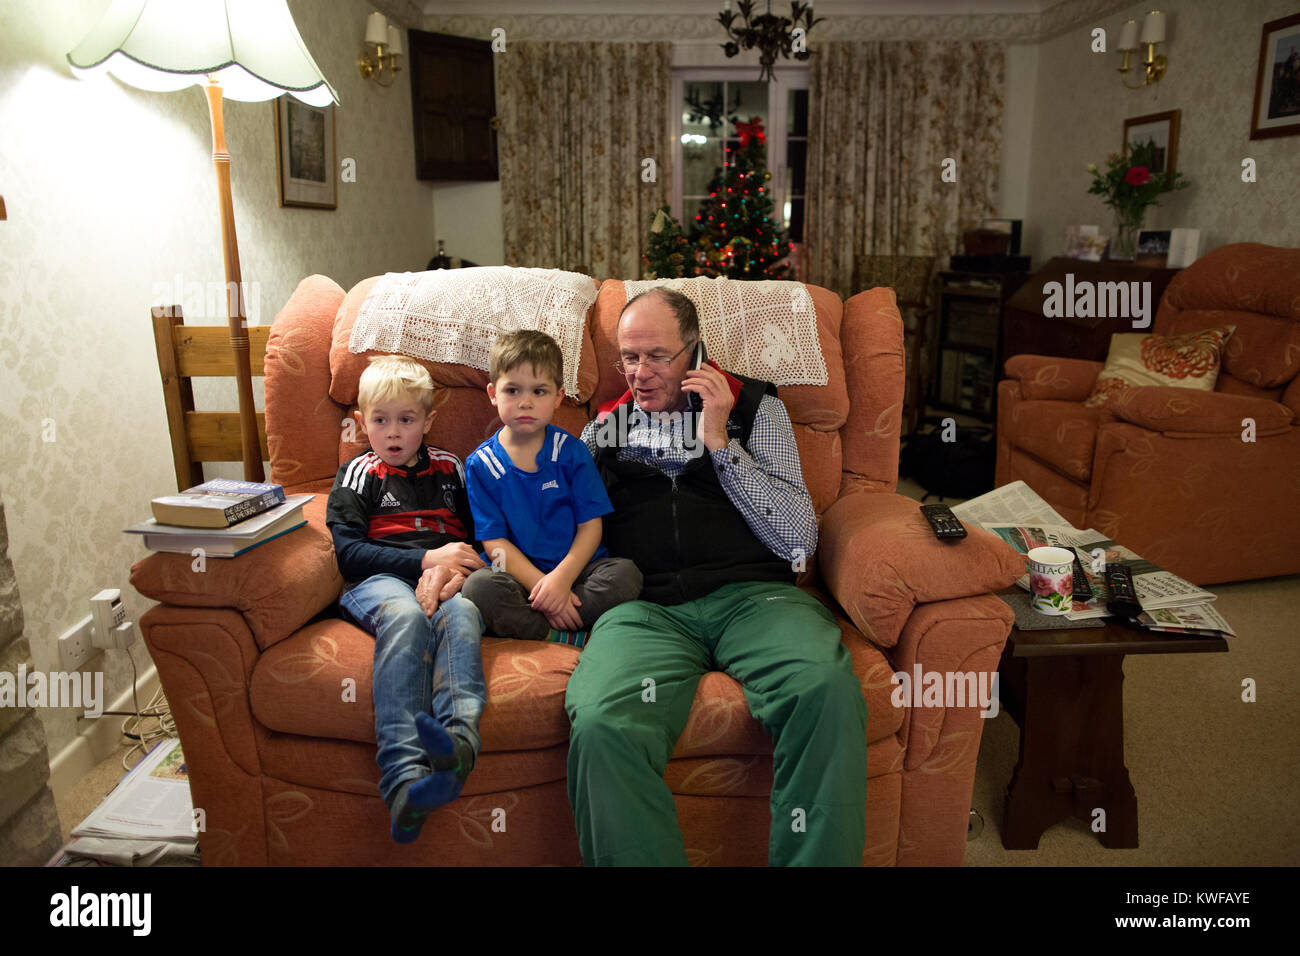 Grand-père avec ses petits-fils qui font un appel téléphonique à des parents au cours de la saison festive, se situant ensemble dans le salon de leur maison, Royaume-Uni Banque D'Images